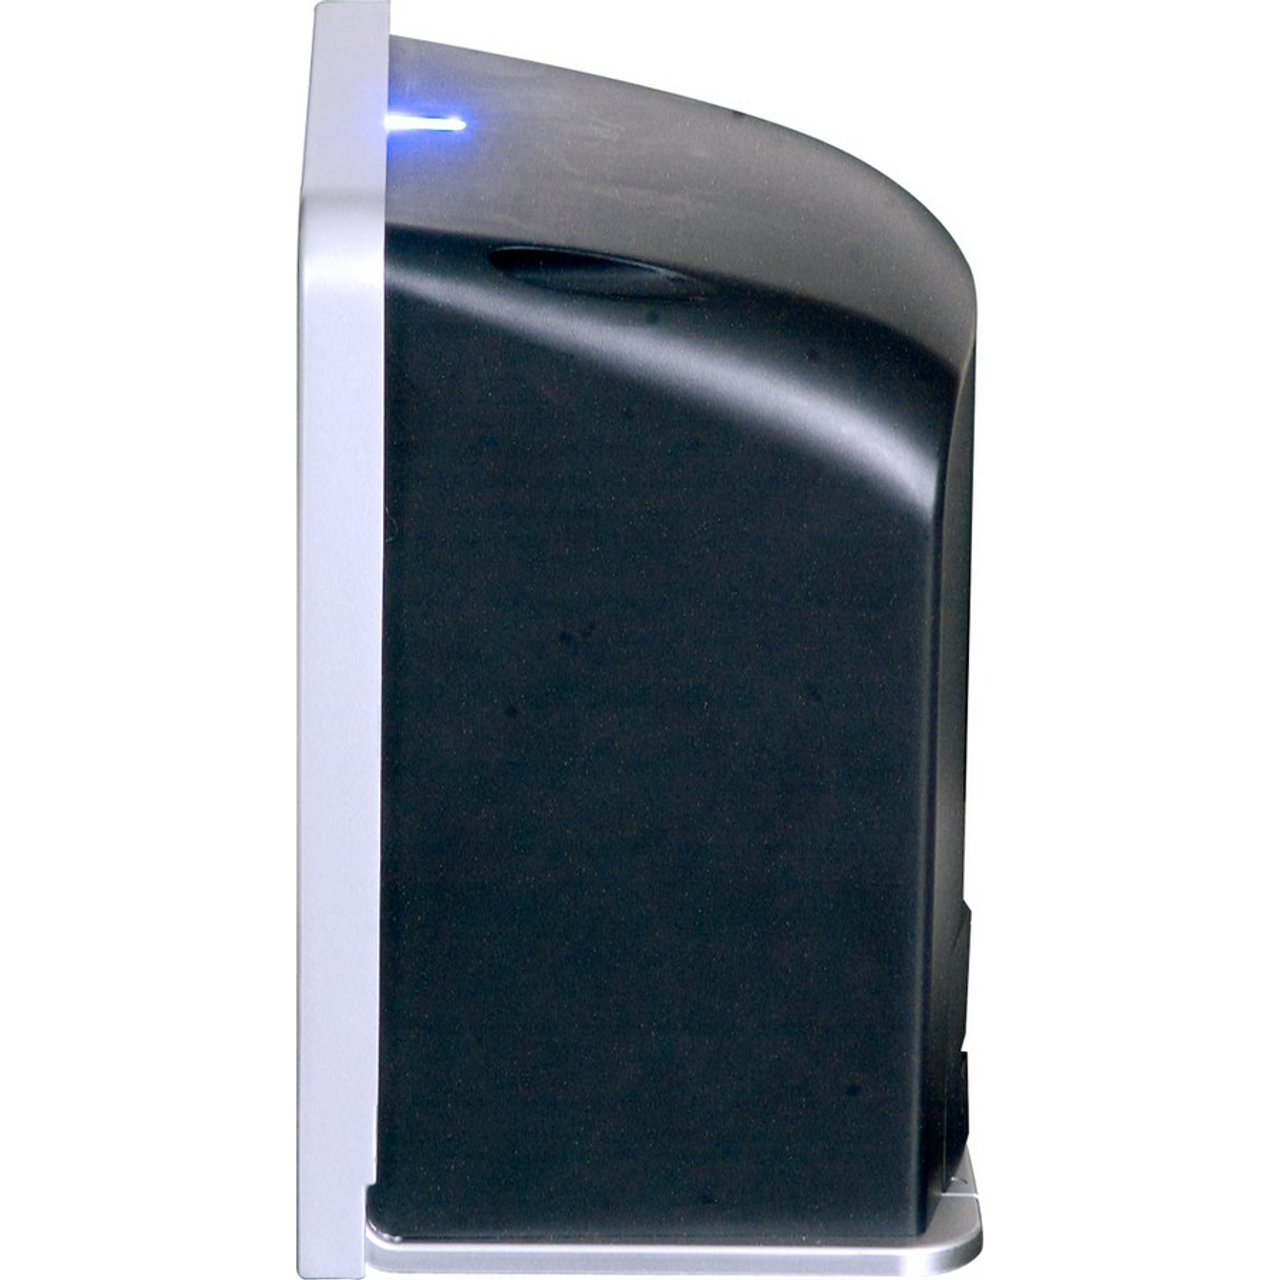 Honeywell (Metrologic) Solaris Omni Directional POS Barcode Scanner